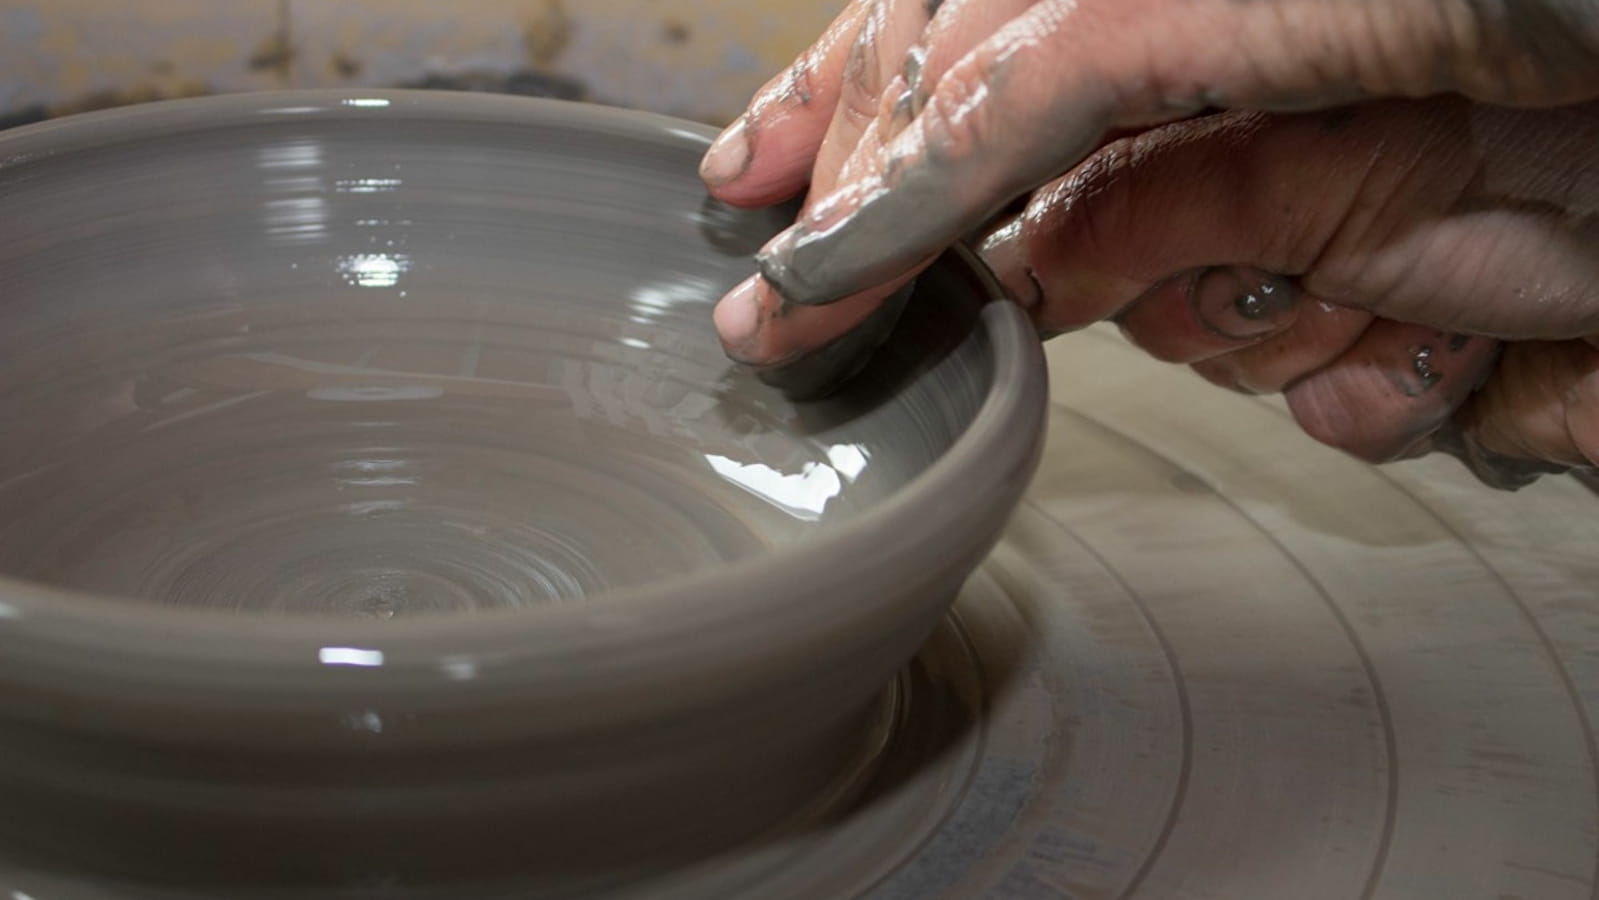 VISITE / ATELIER découverte (adulte) Atelier poterie sans tour